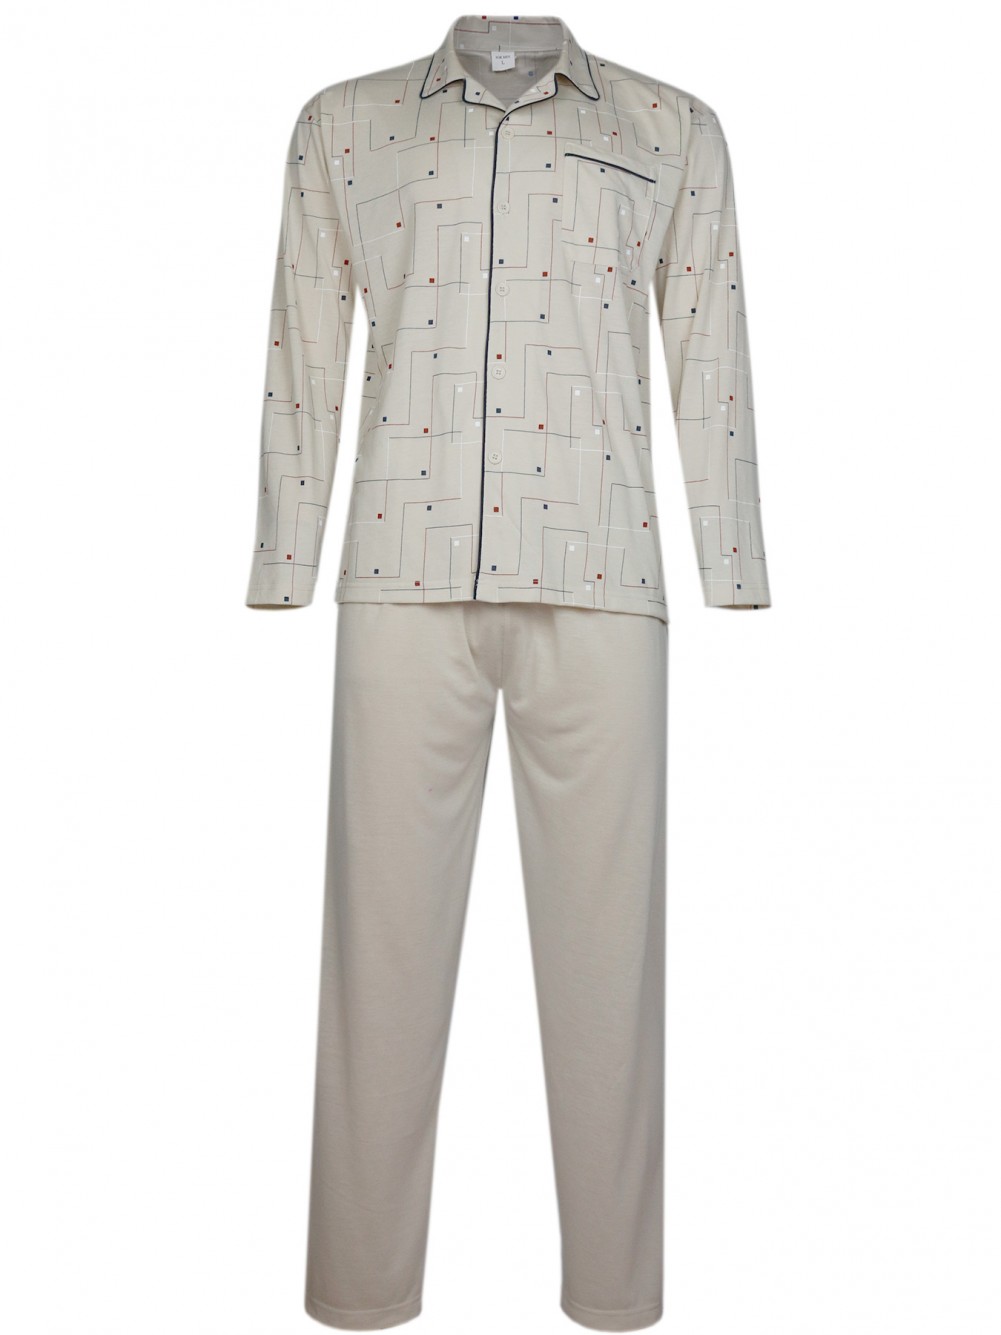 Herren Pyjama - langer Schlafanzug in Jersey Qualität - Beige